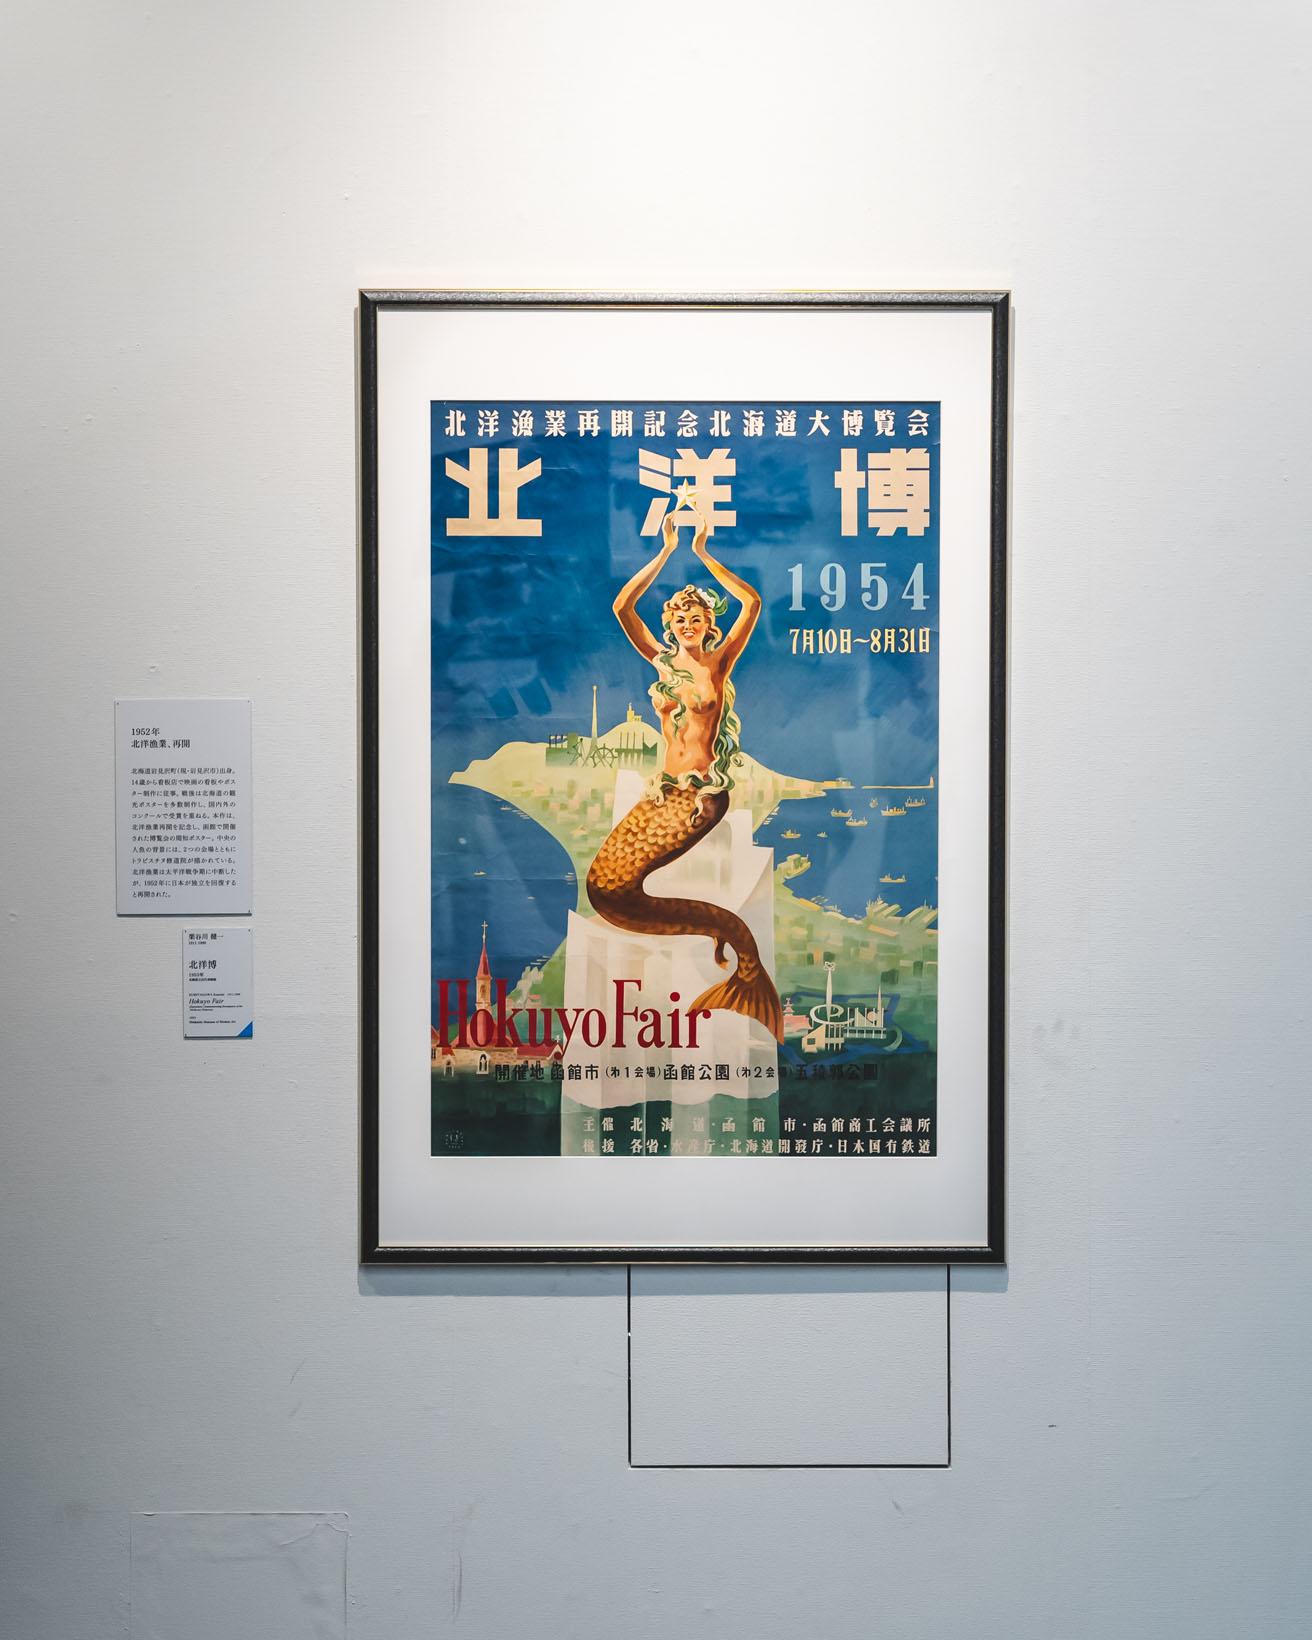 栗谷川健一《北洋博》（1953年）。作者は北海道出身。戦後、北海道の観光ポスターを多数制作した。